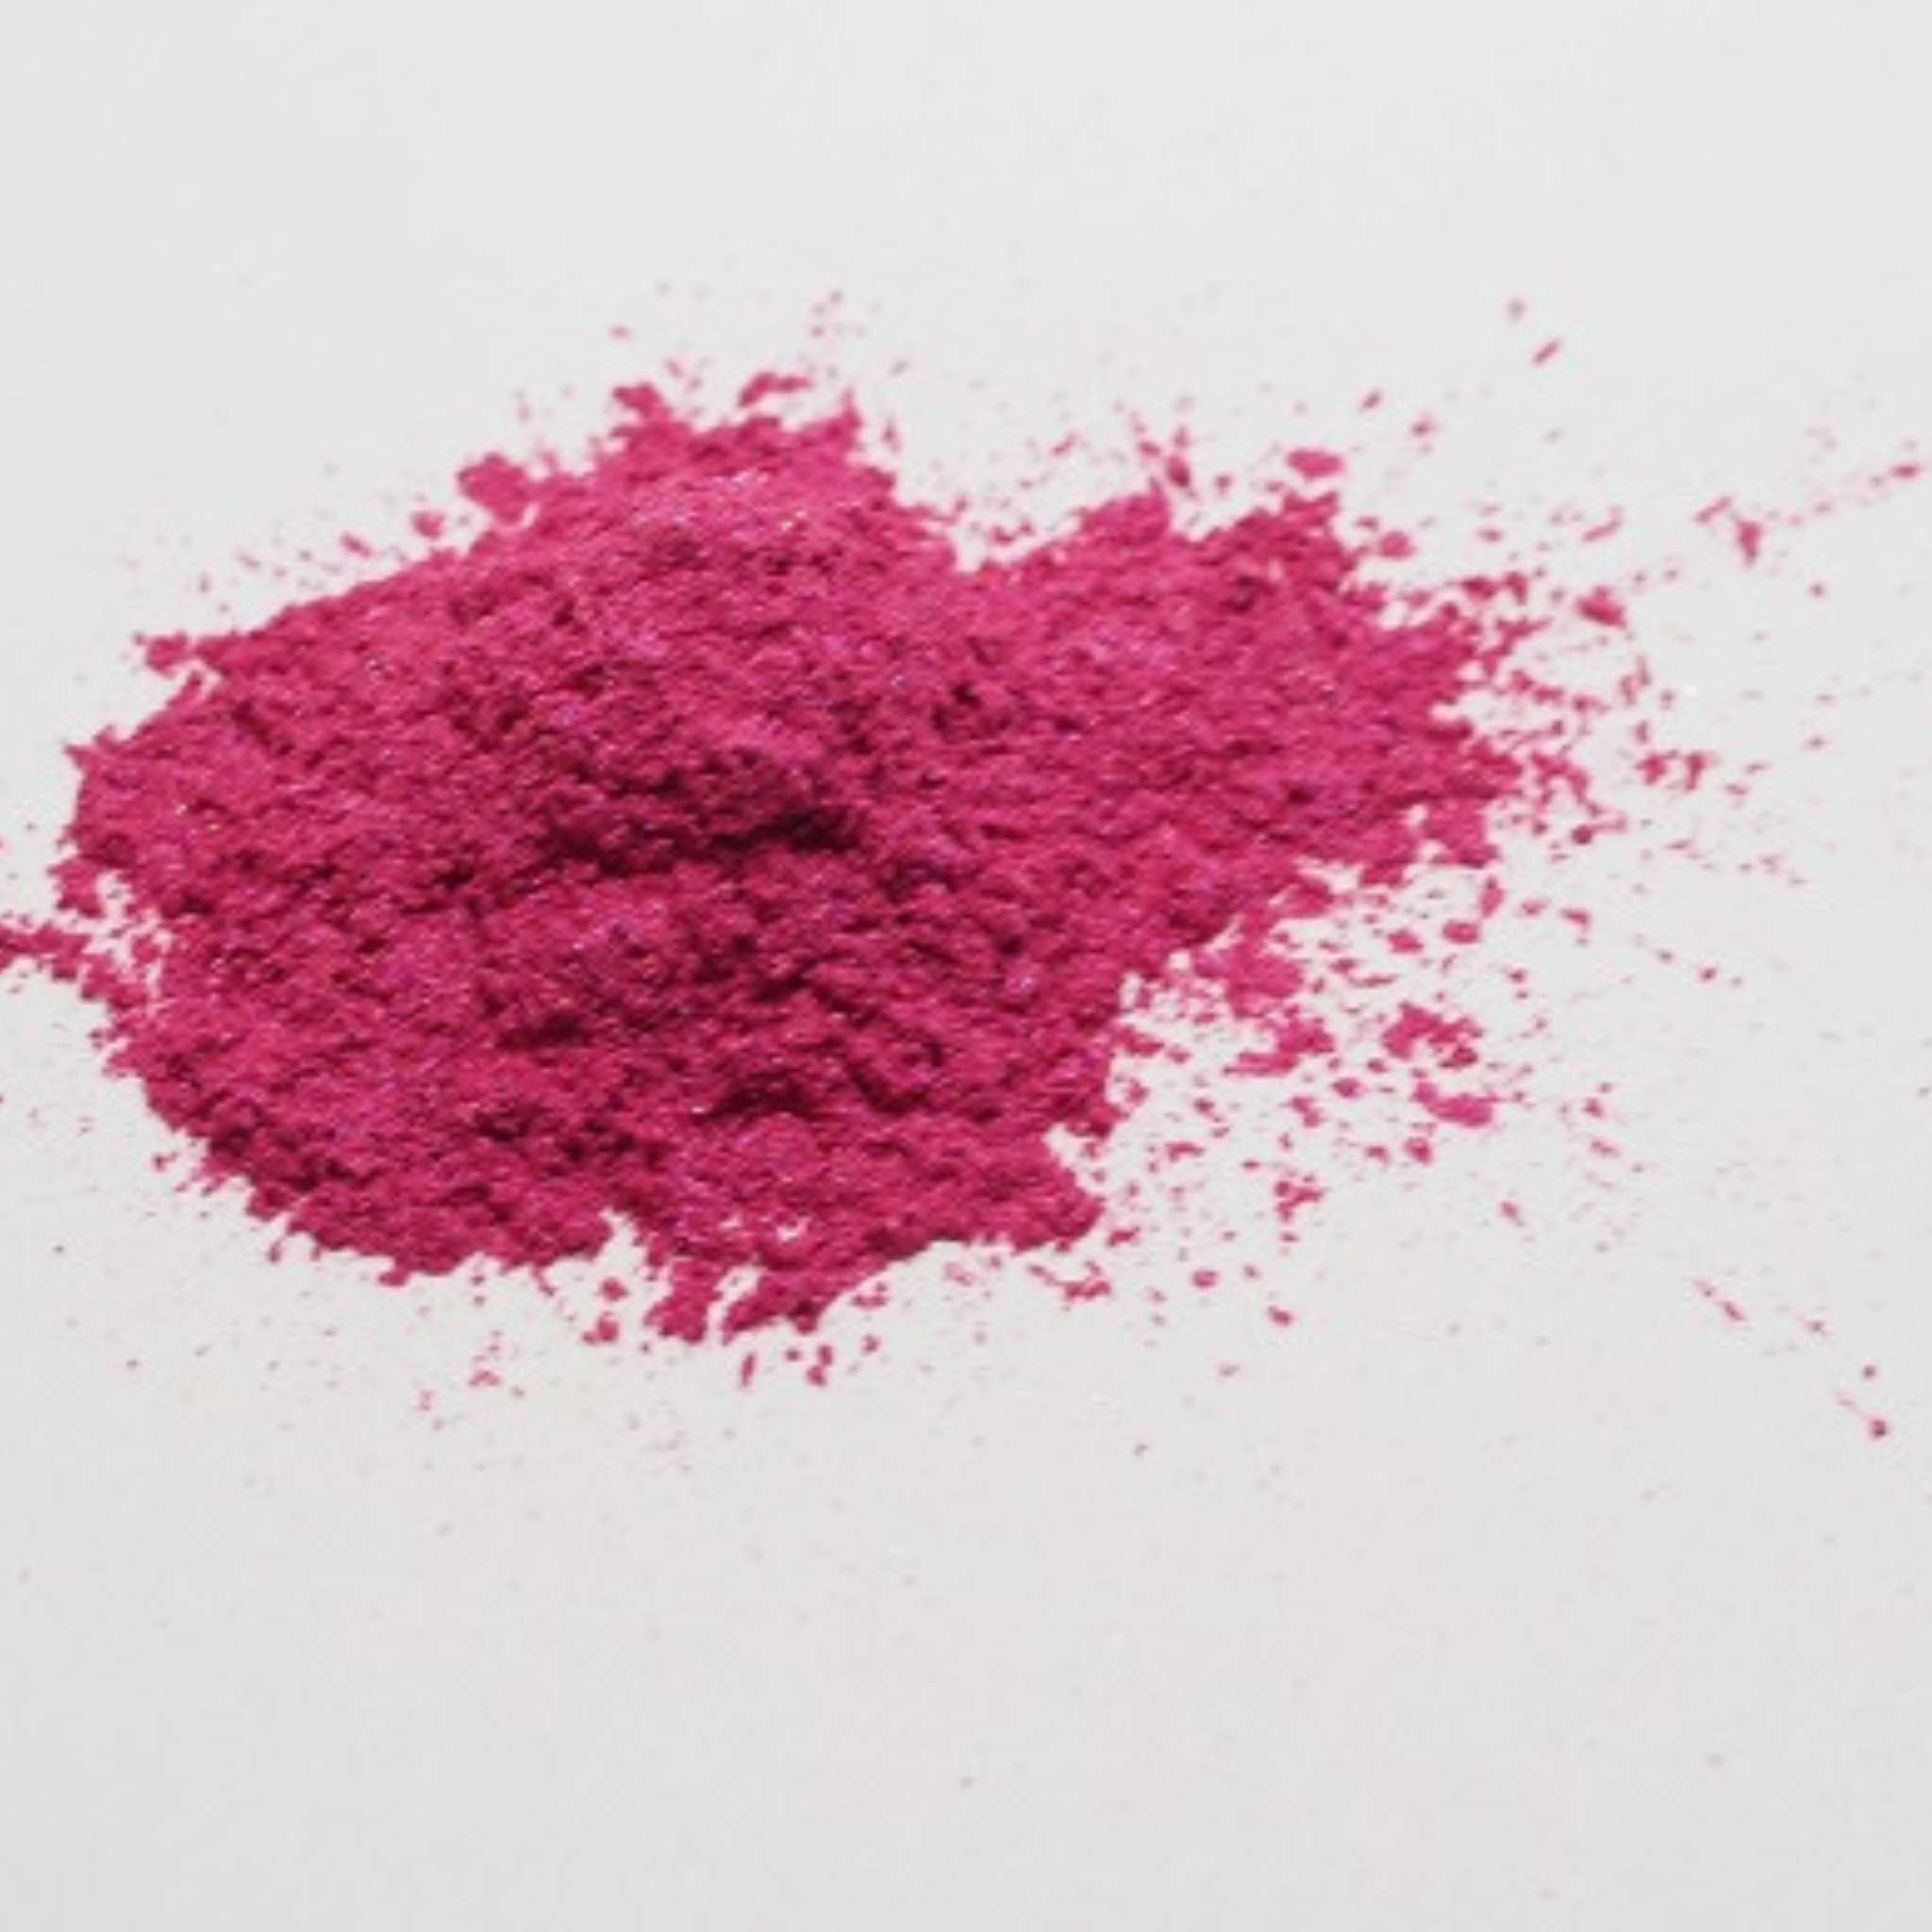 Häufchen pinkes Mica-Puder (Fantasia Pink) auf einer weißen Oberfläche